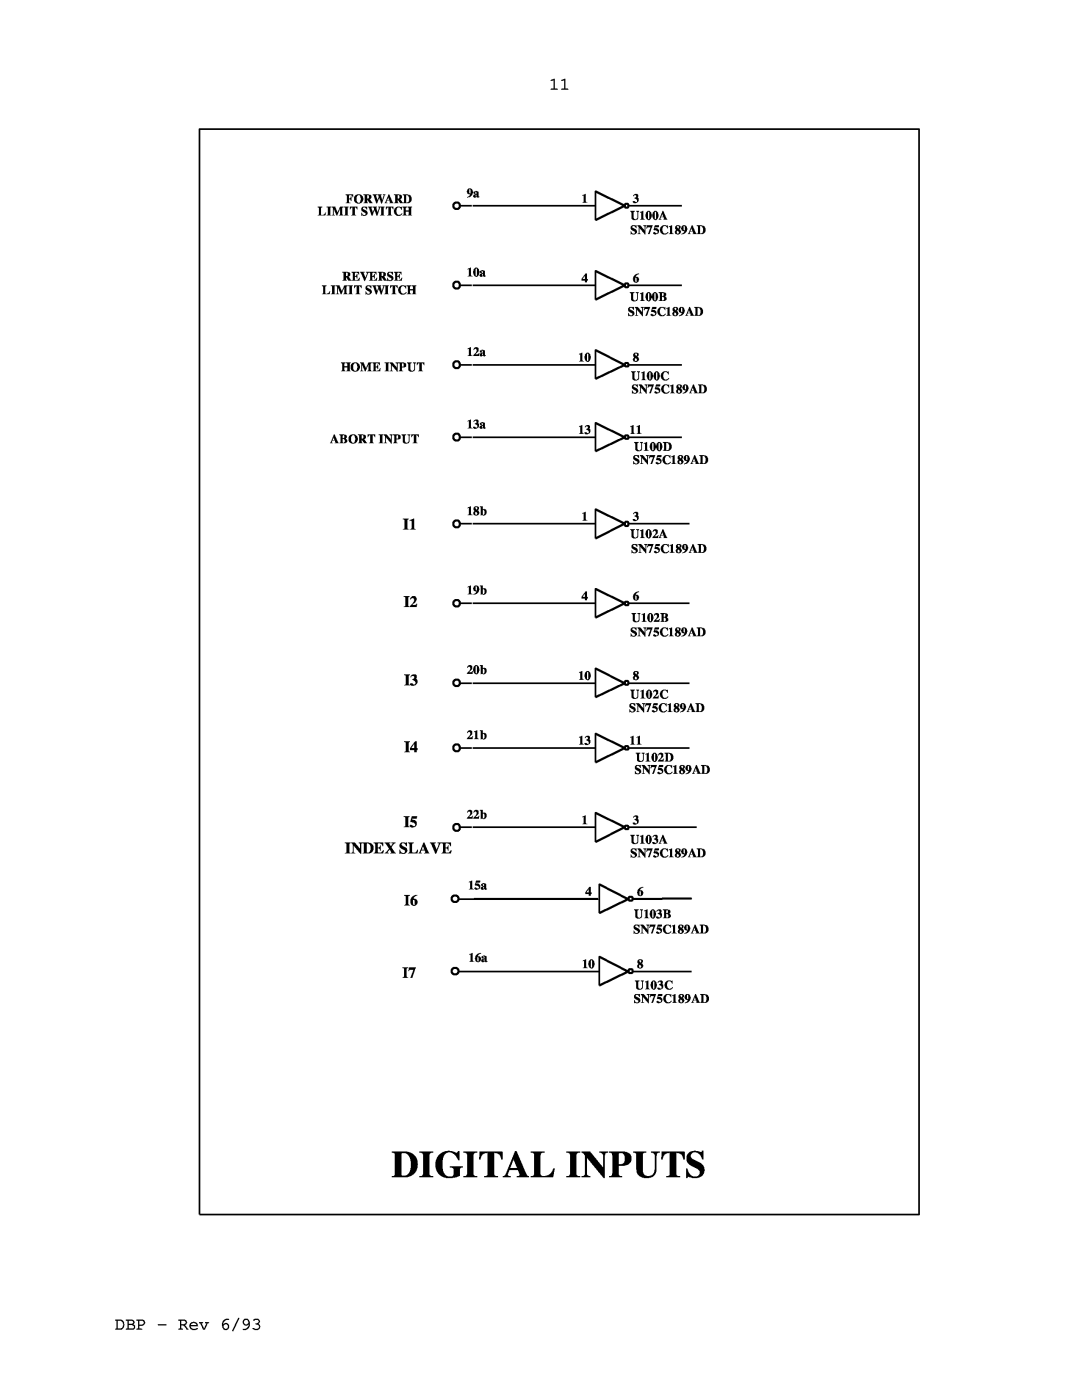 Elmo DBP SERIES manual Digital Inputs, DBP - Rev 6/93, I1 I2 I3 I4 I5 INDEX SLAVE 